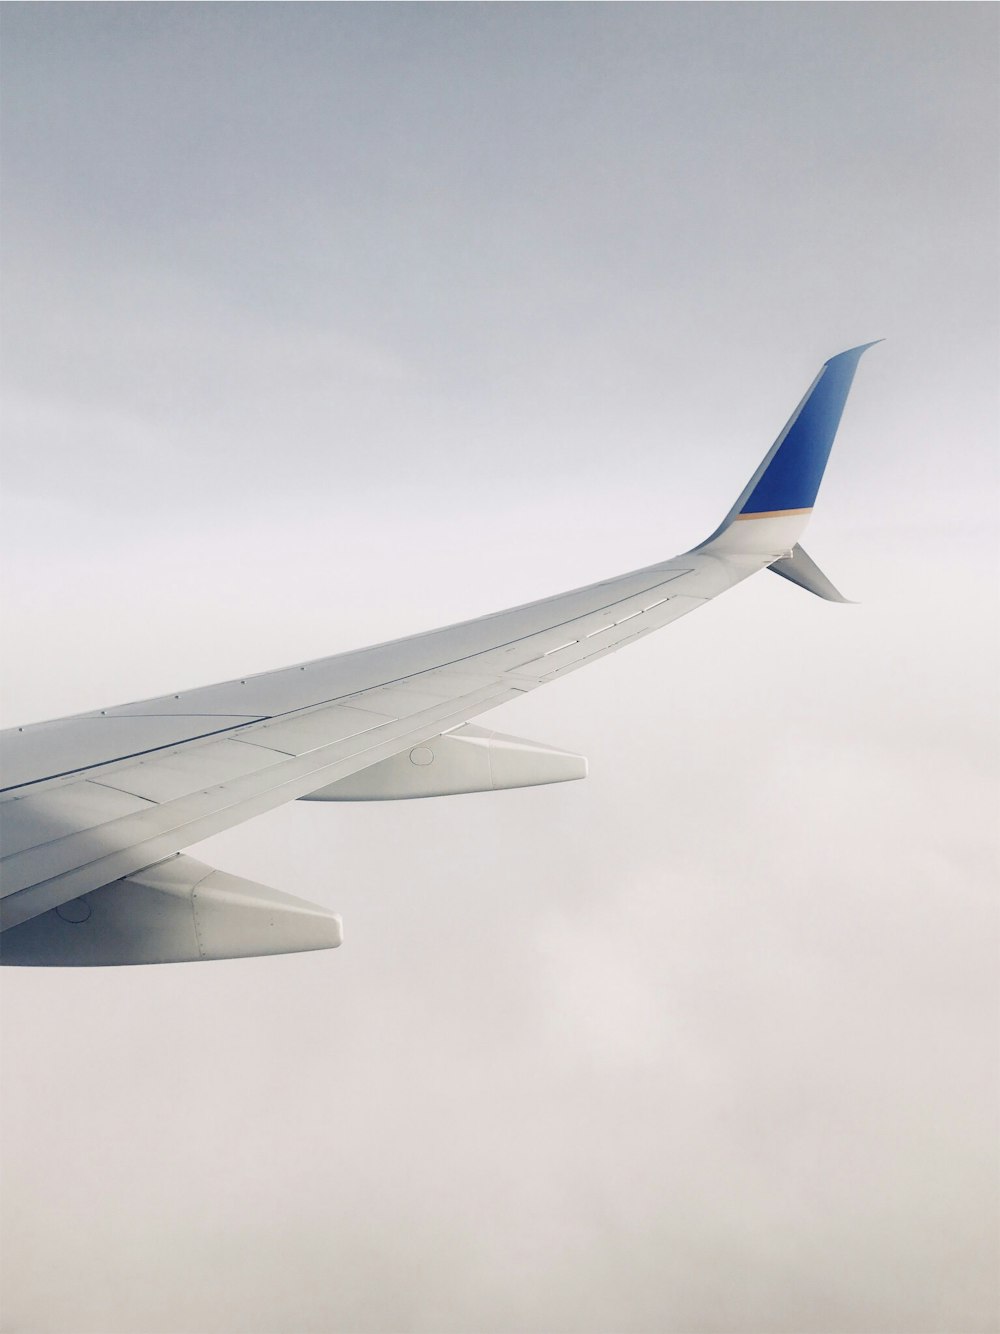 Avião branco e azul voando sobre nuvens durante o dia